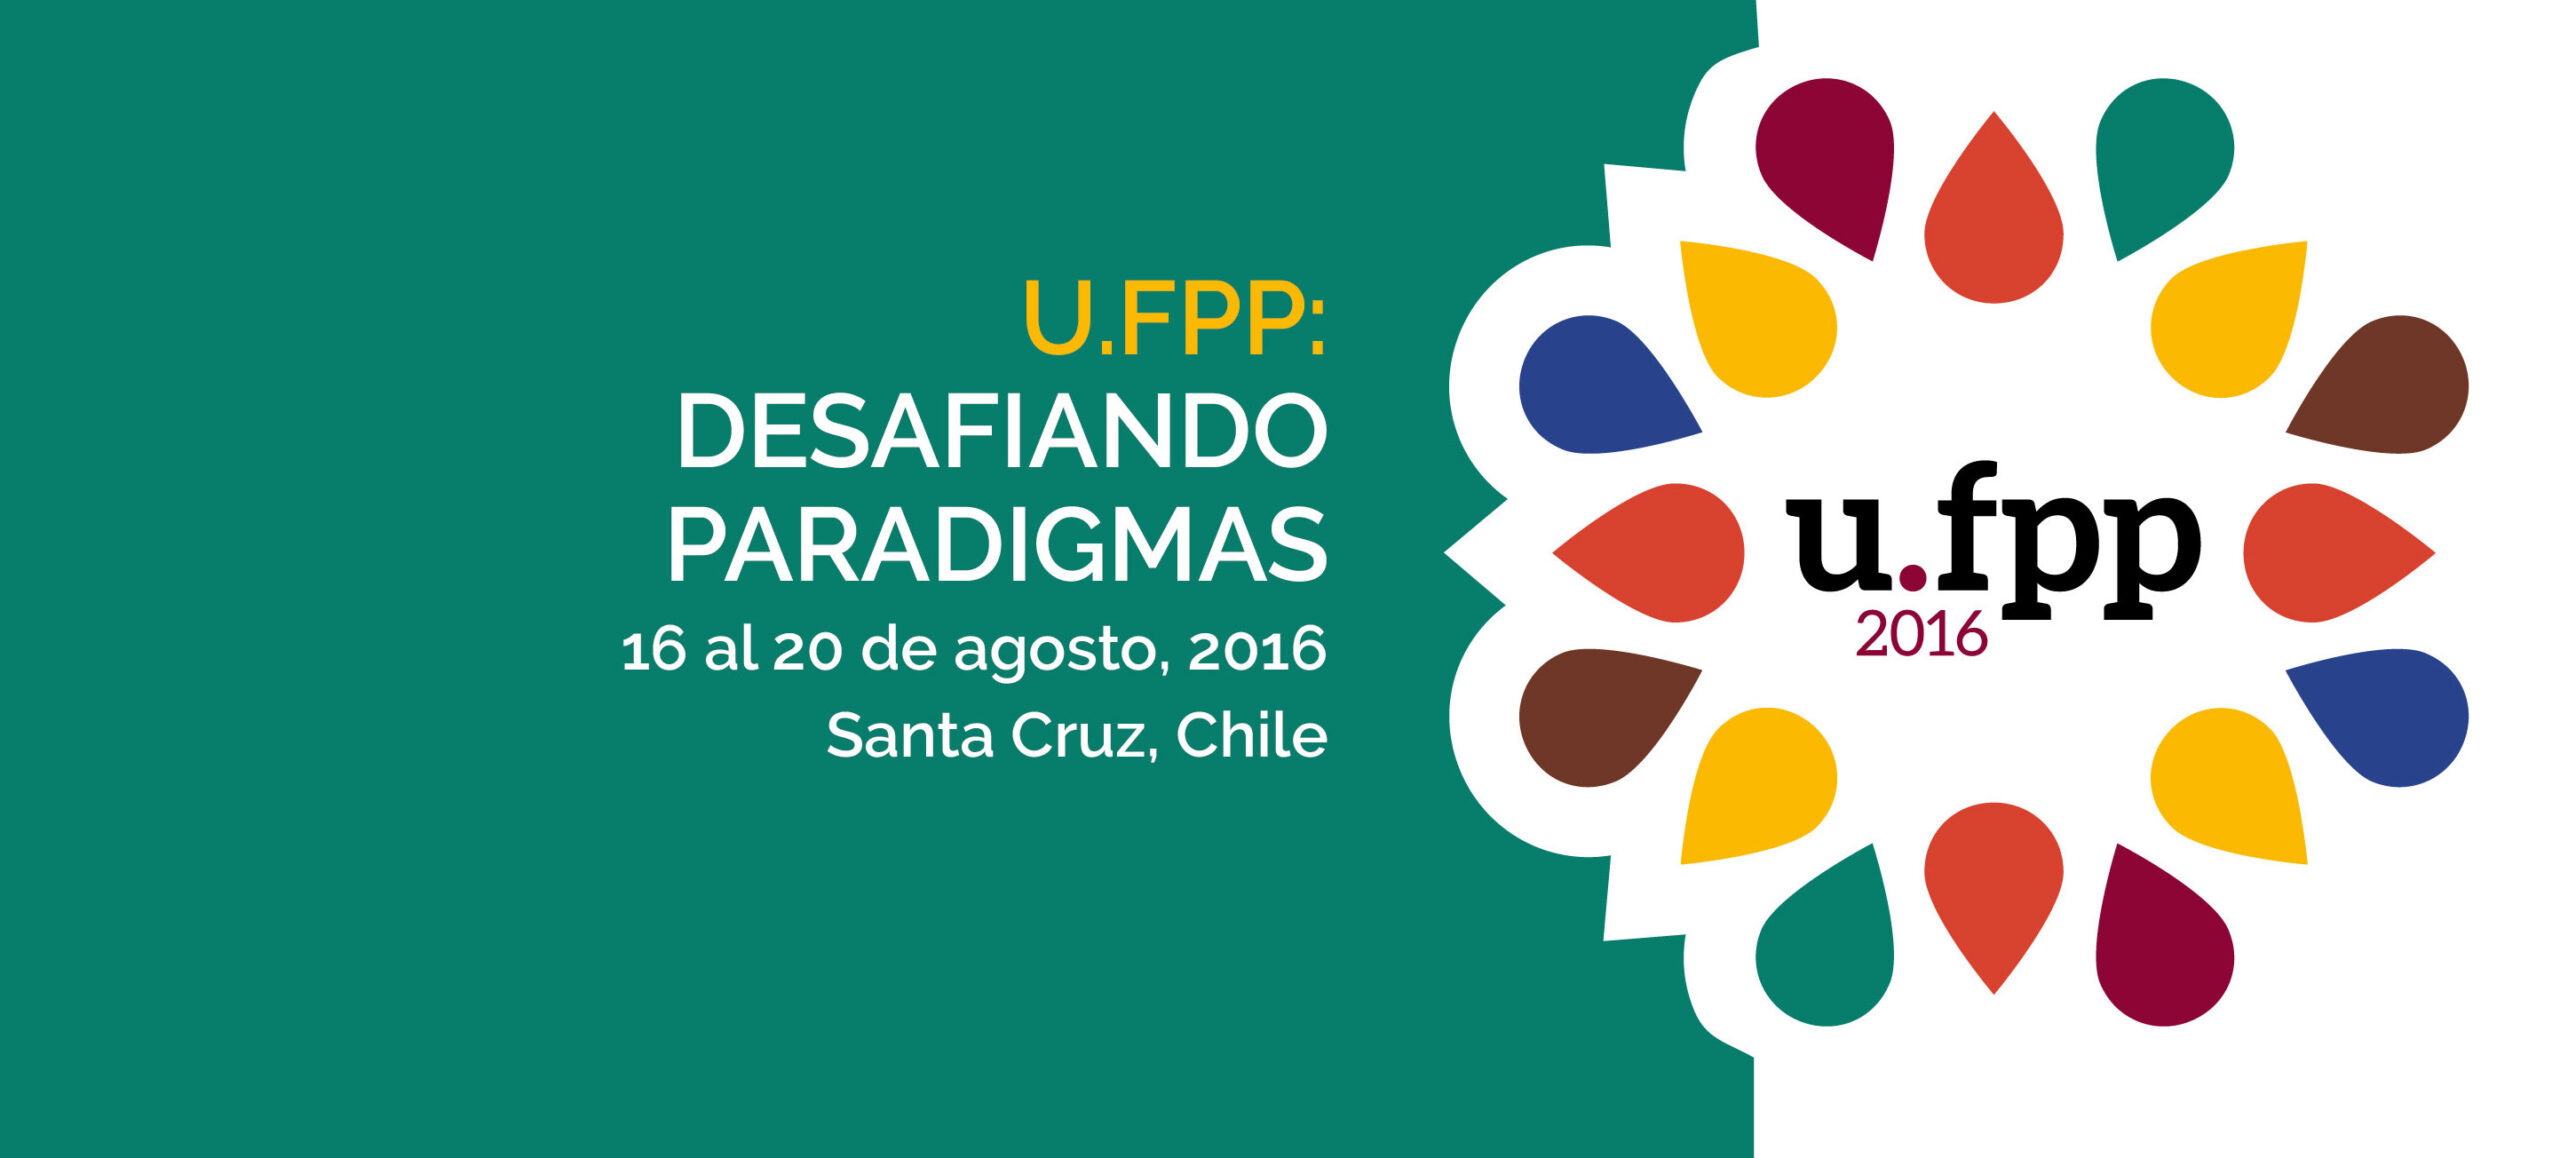 U.FPP 2016: Desafiando Paradigmas